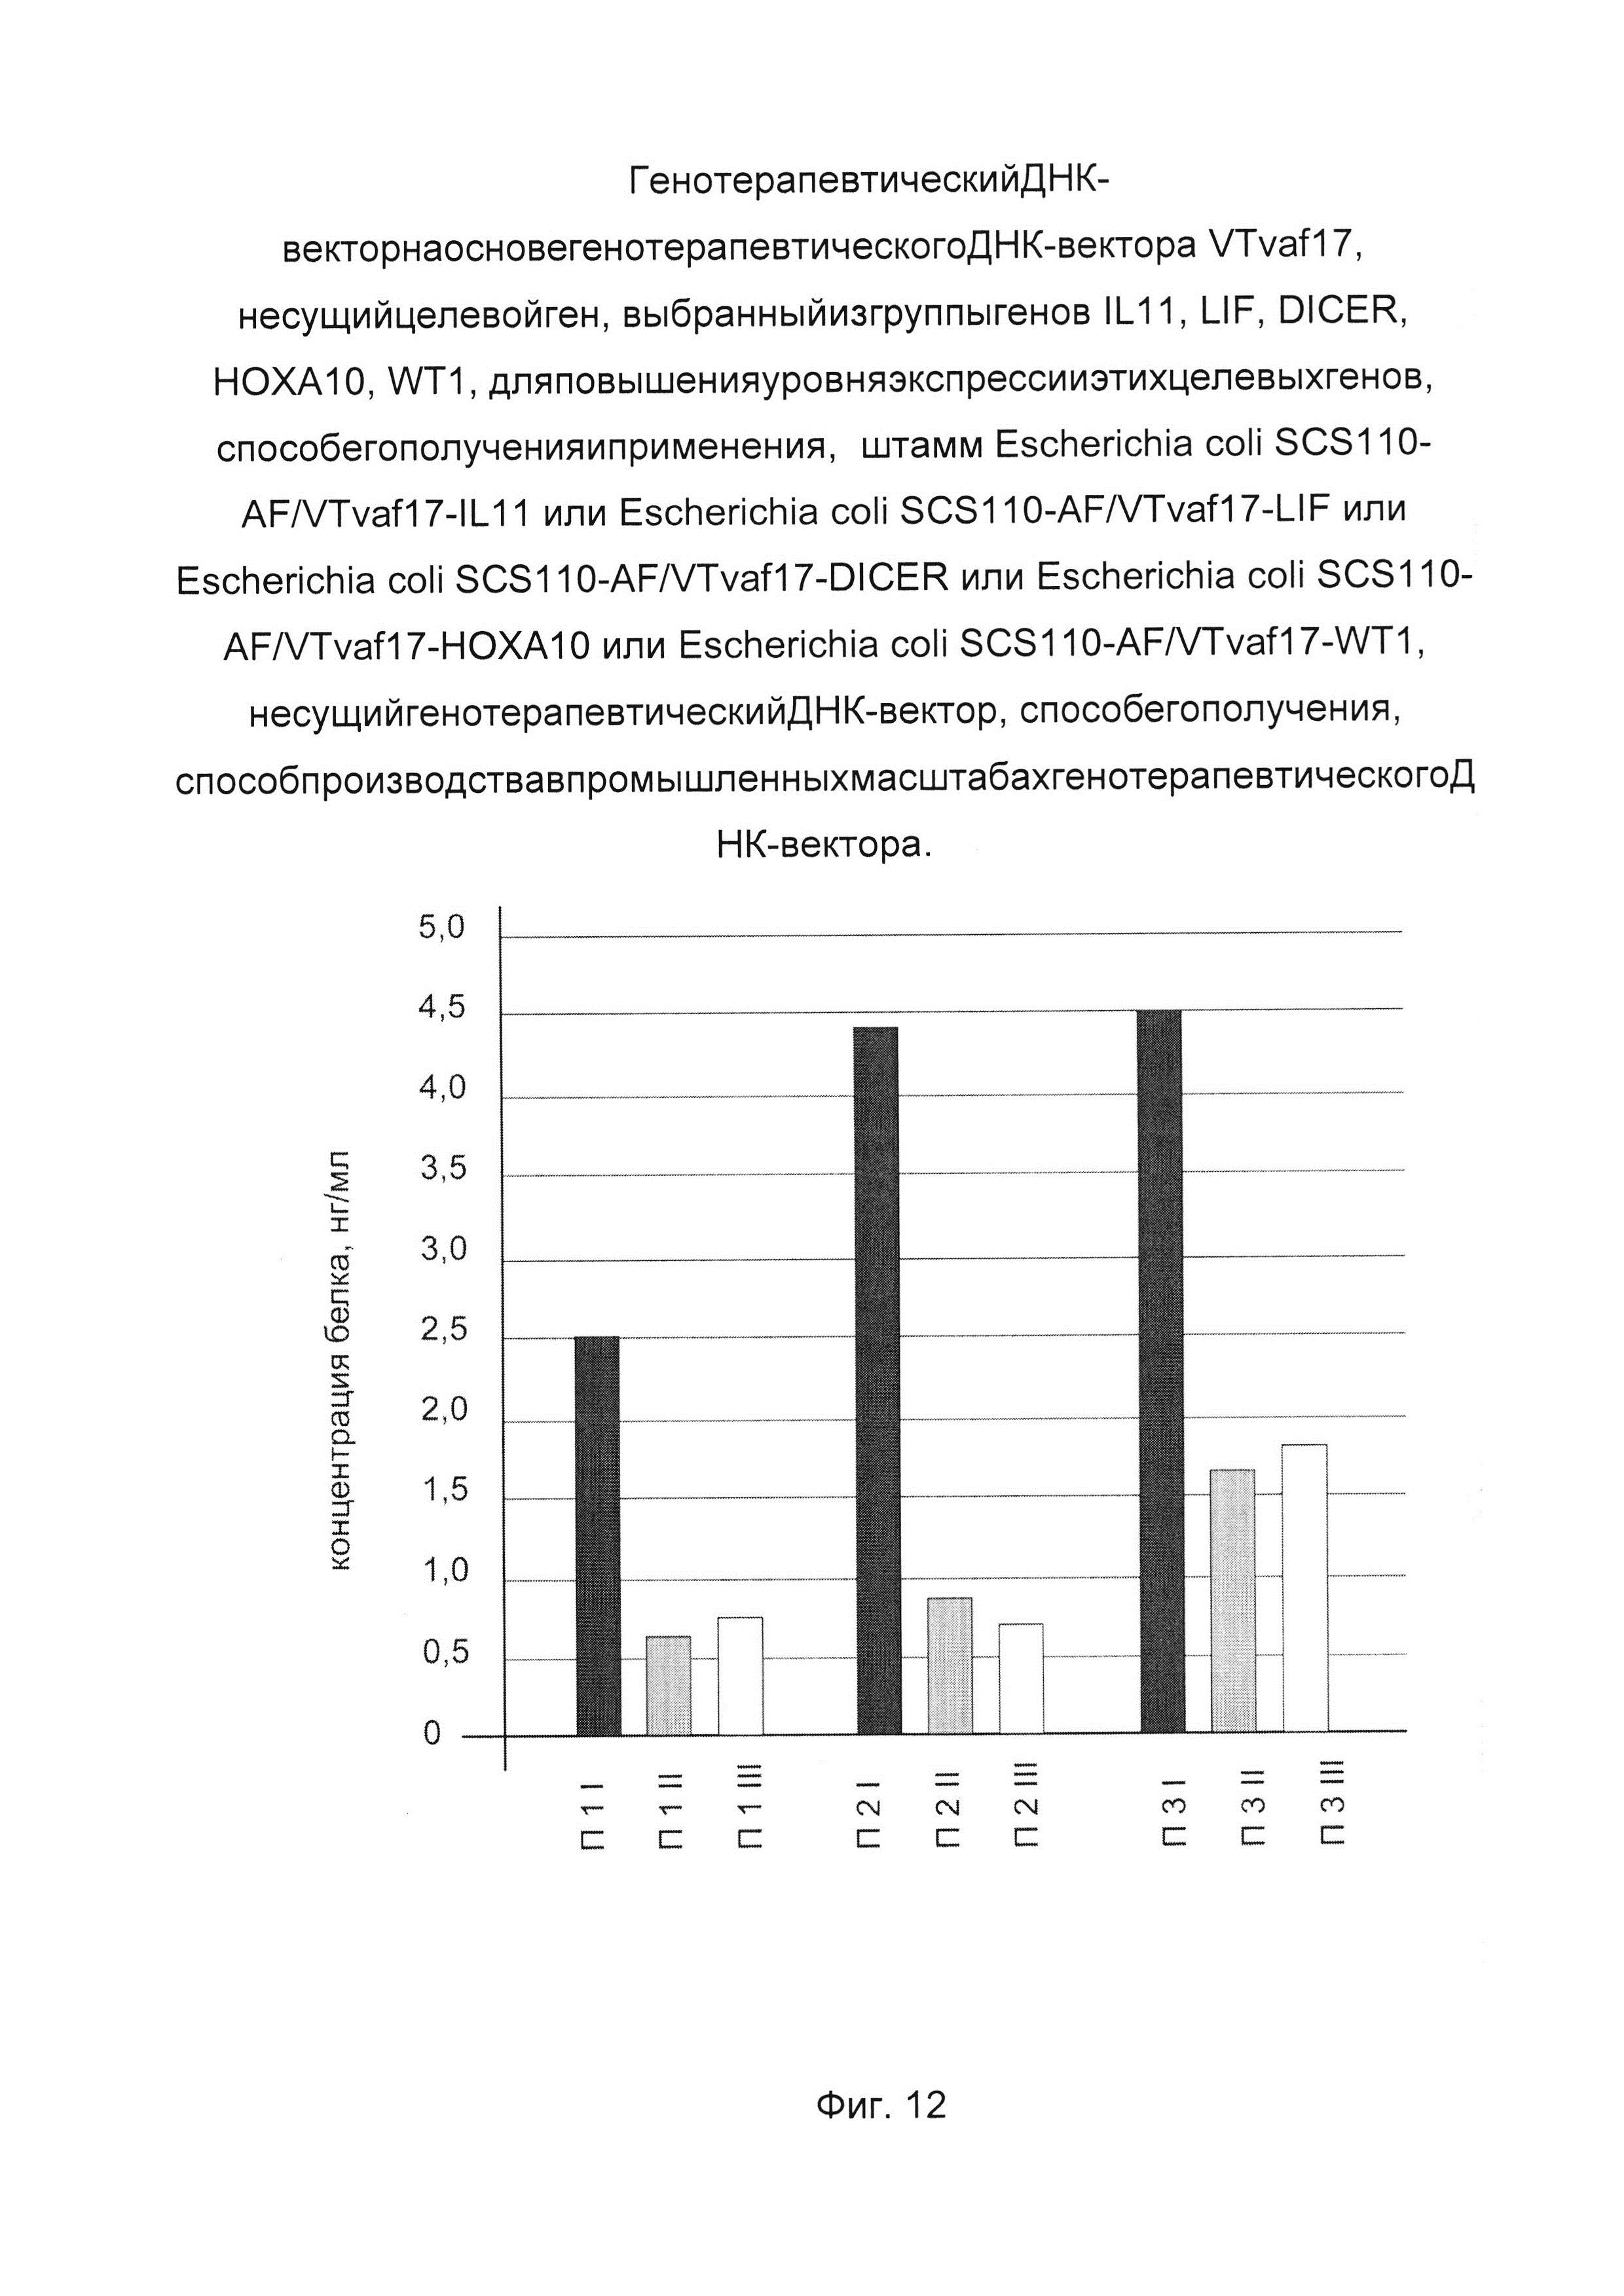 Генотерапевтический ДНК-вектор на основе генотерапевтического ДНК-вектора VTvaf17, несущий целевой ген, выбранный из группы генов IL11, LIF, DICER, HOXA10, WT1, для повышения уровня экспрессии этих целевых генов, способ его получения и применения, штамм Escherichia coli SCS110-AF/VTvaf17-IL11, или Escherichia coli SCS110-AF/VTvaf17-LIF, или Escherichia coli SCS110-AF/VTvaf17-DICER, или Escherichia coli SCS110-AF/VTvaf17-HOXA10, или Escherichia coli SCS110-AF/VTvaf17-WT1, несущий генотерапевтический ДНК-вектор, способ его получения, способ производства в промышленных масштабах генотерапевтического ДНК-вектора